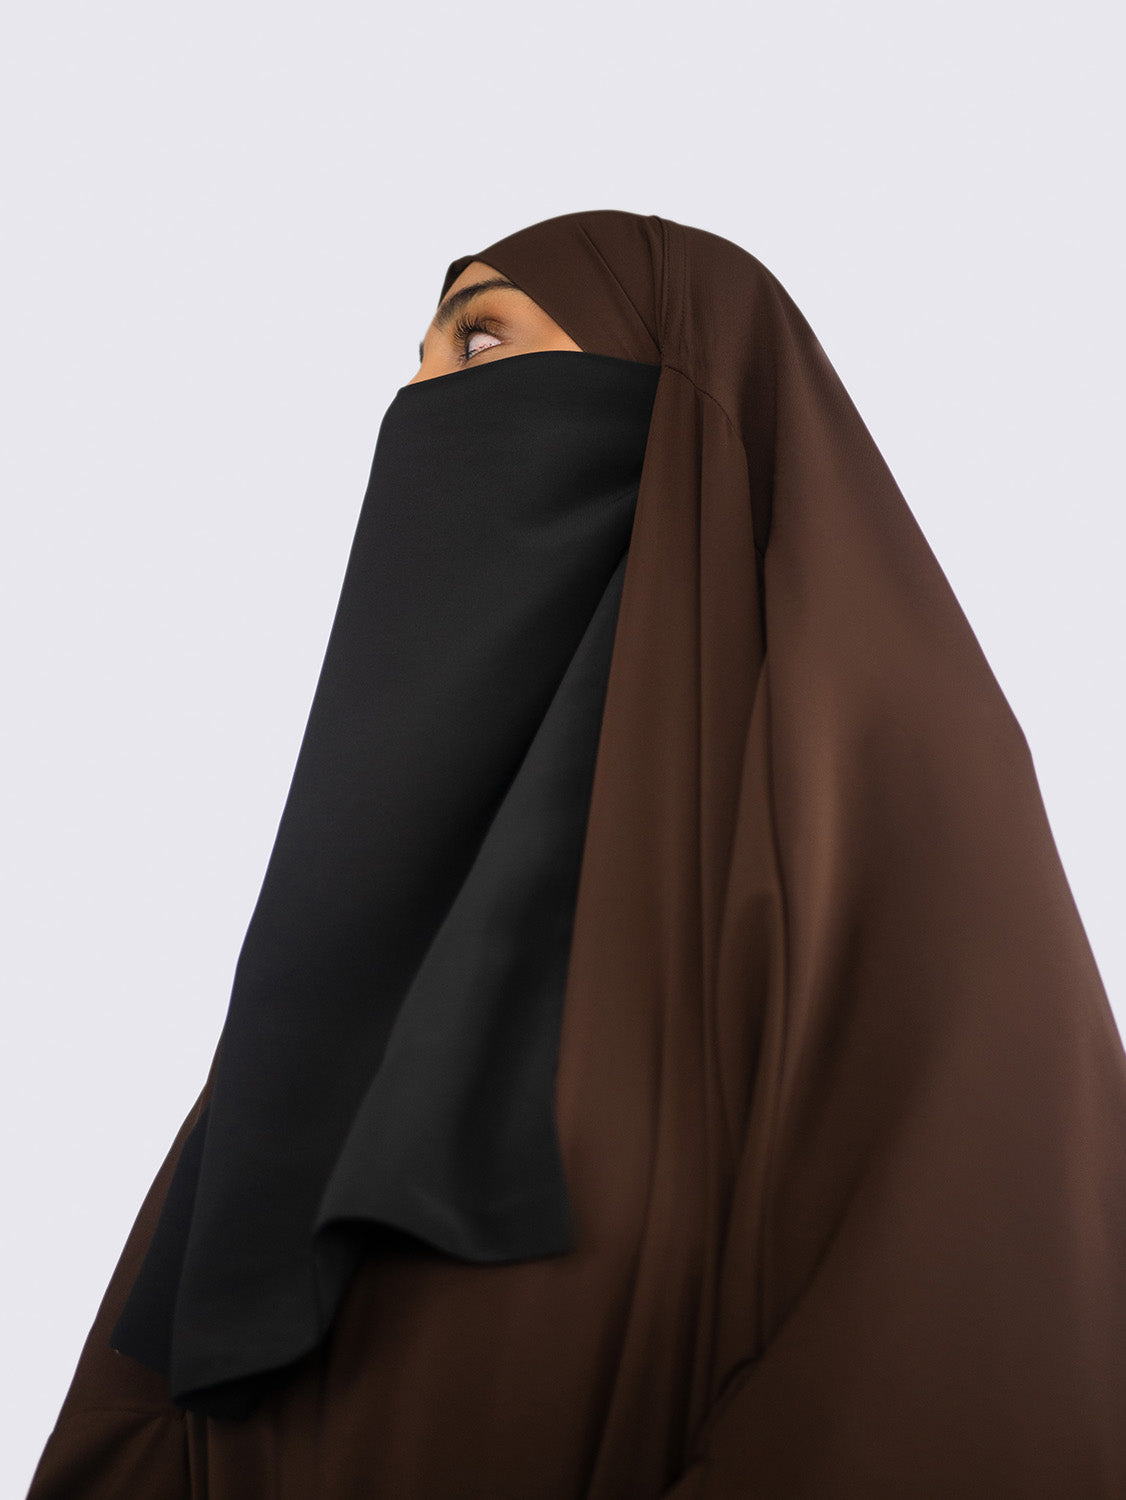 Diadem Chiffon Niqab, Kohl